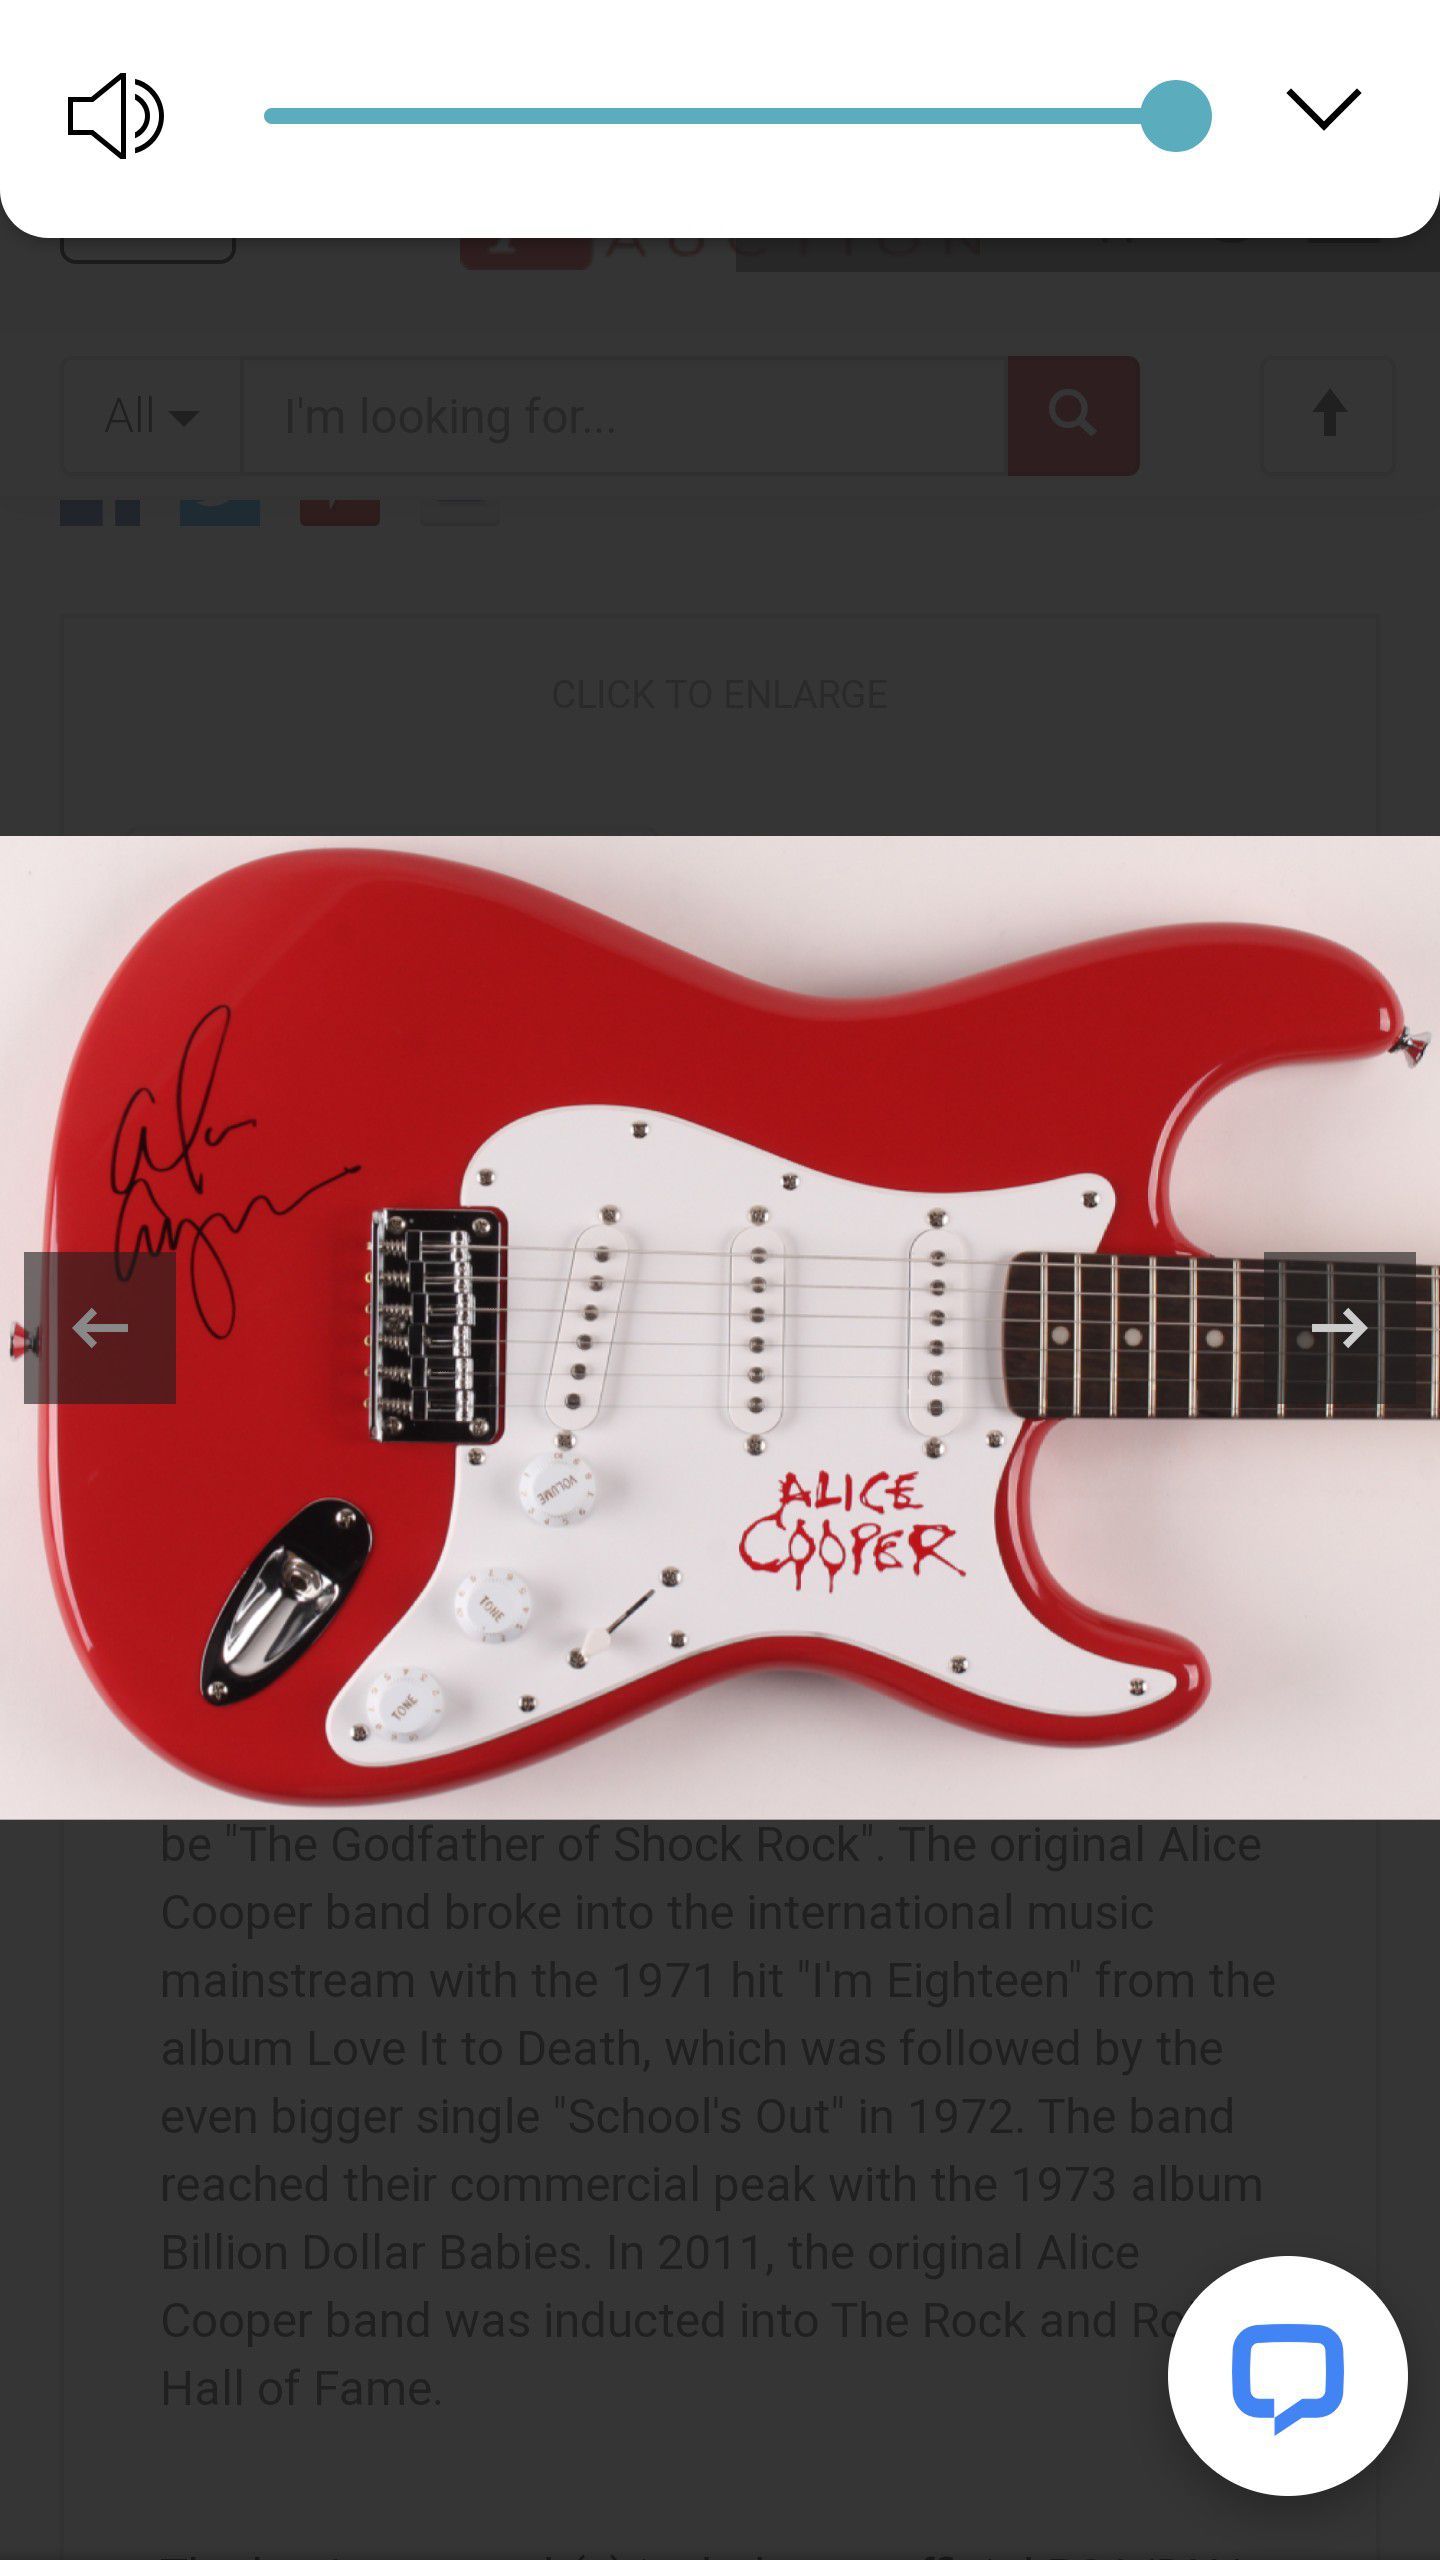 Alice Cooper signed Fender guitar